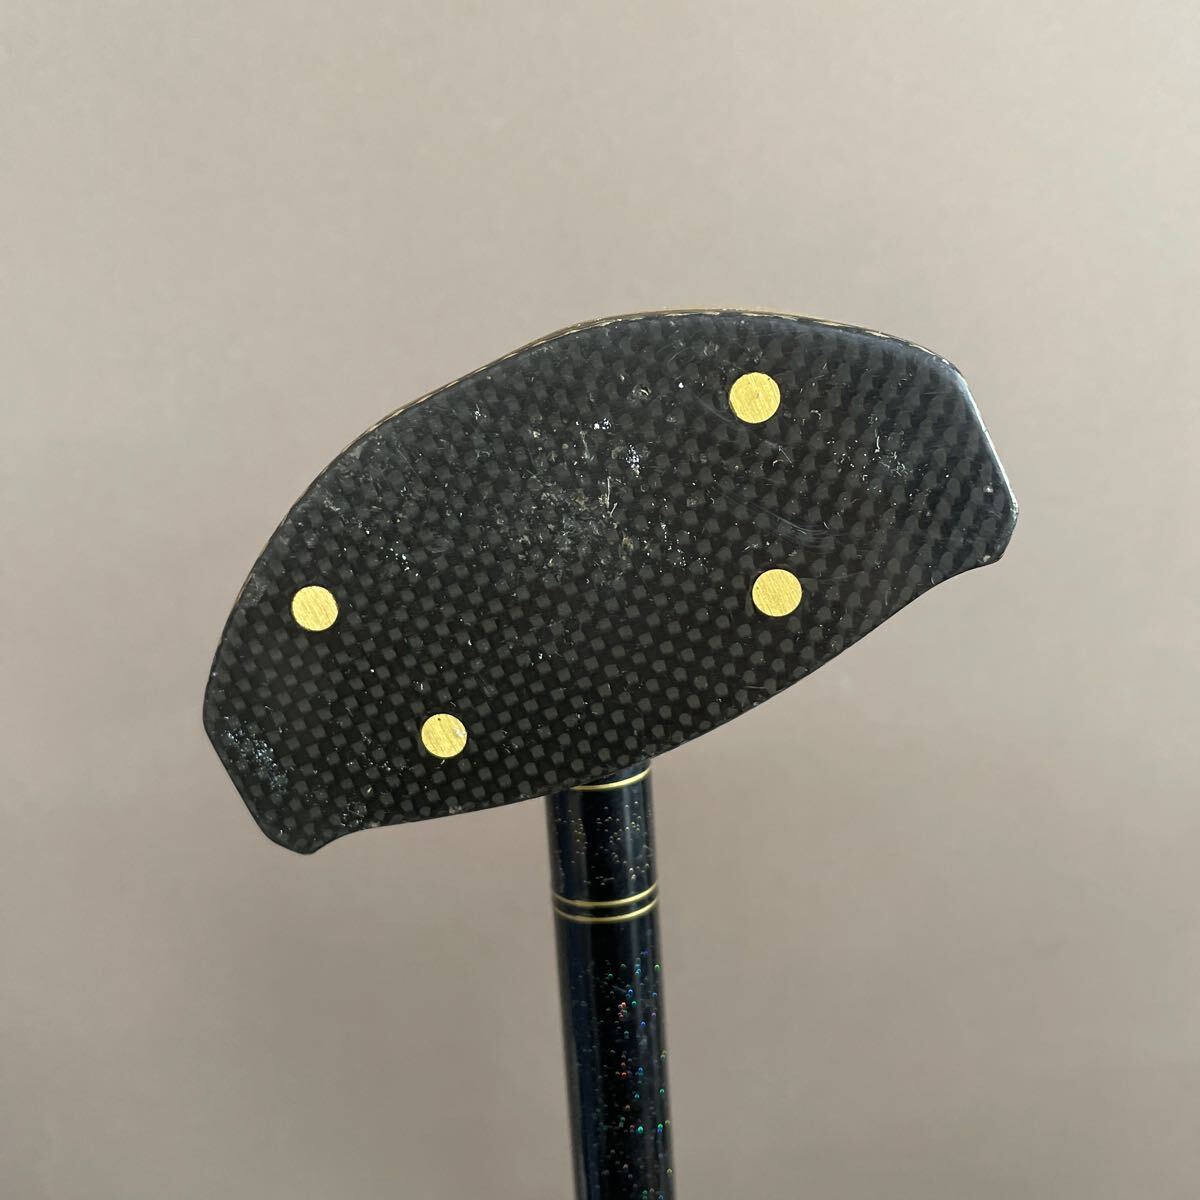 【スポーツ用品】パークゴルフクラブ IPGA認定品 NITTAX genuine MakBird ゴルフクラブ 右利き用の画像3